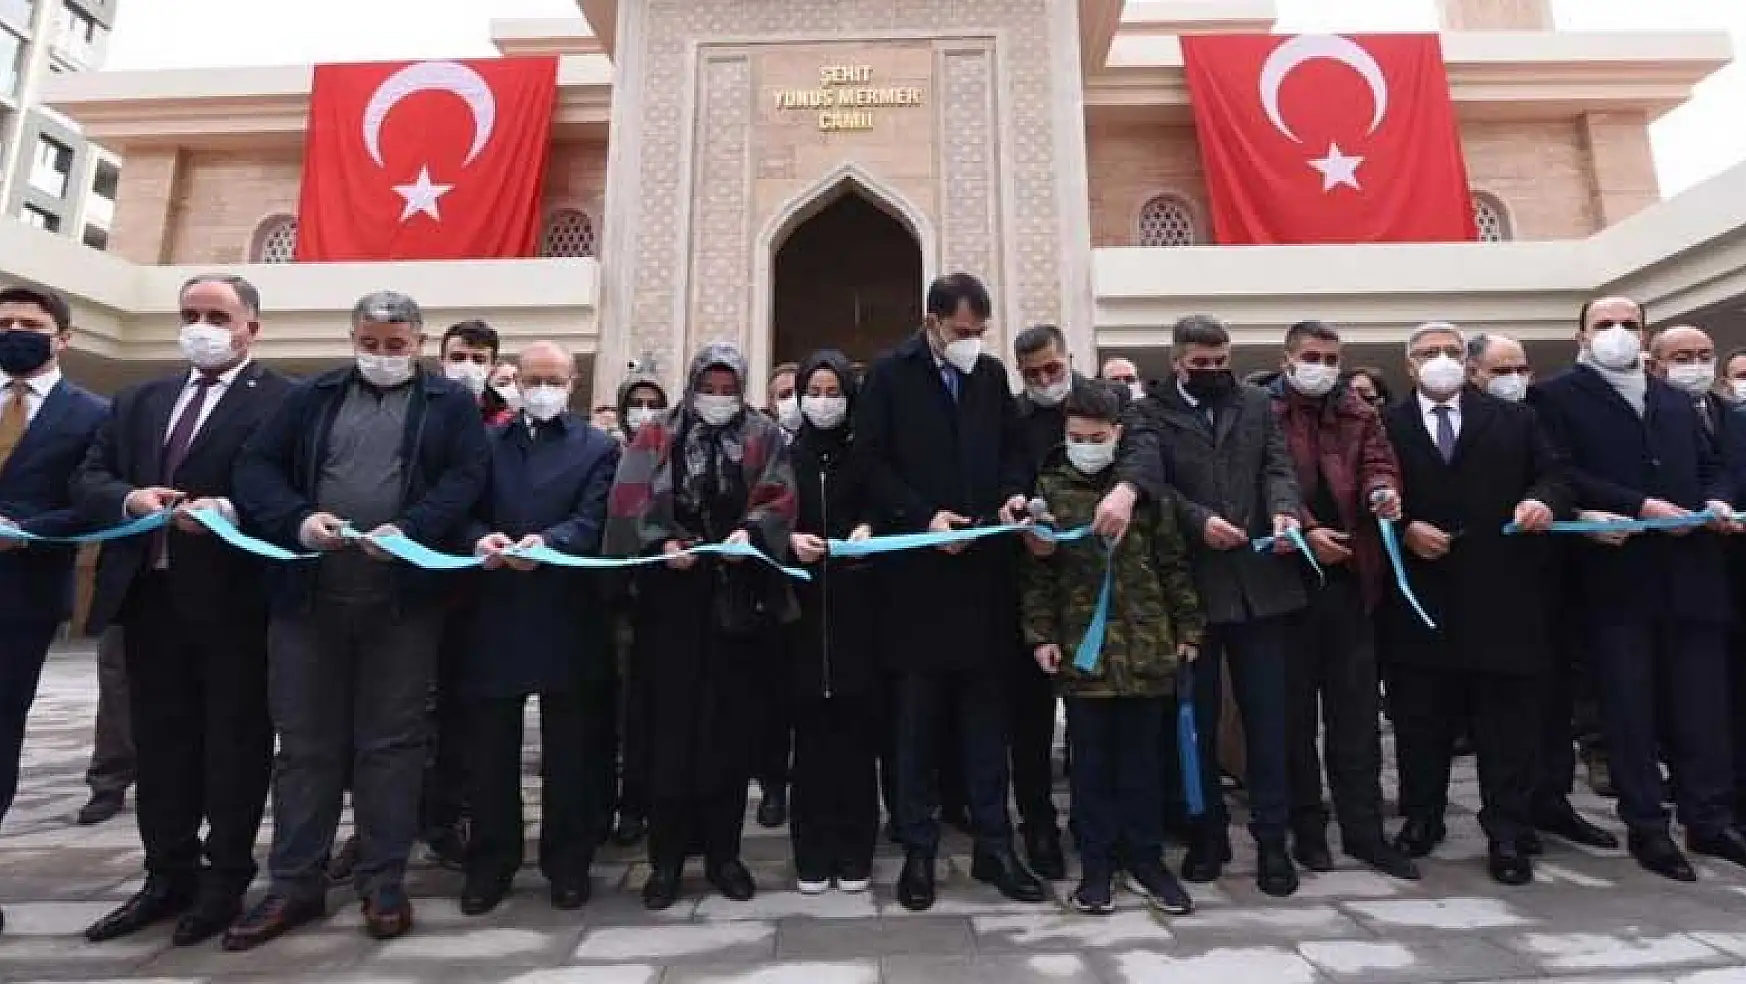 Bakan Kurum Konya'da Yunus Mermer Camii'nin açılışına katıldı